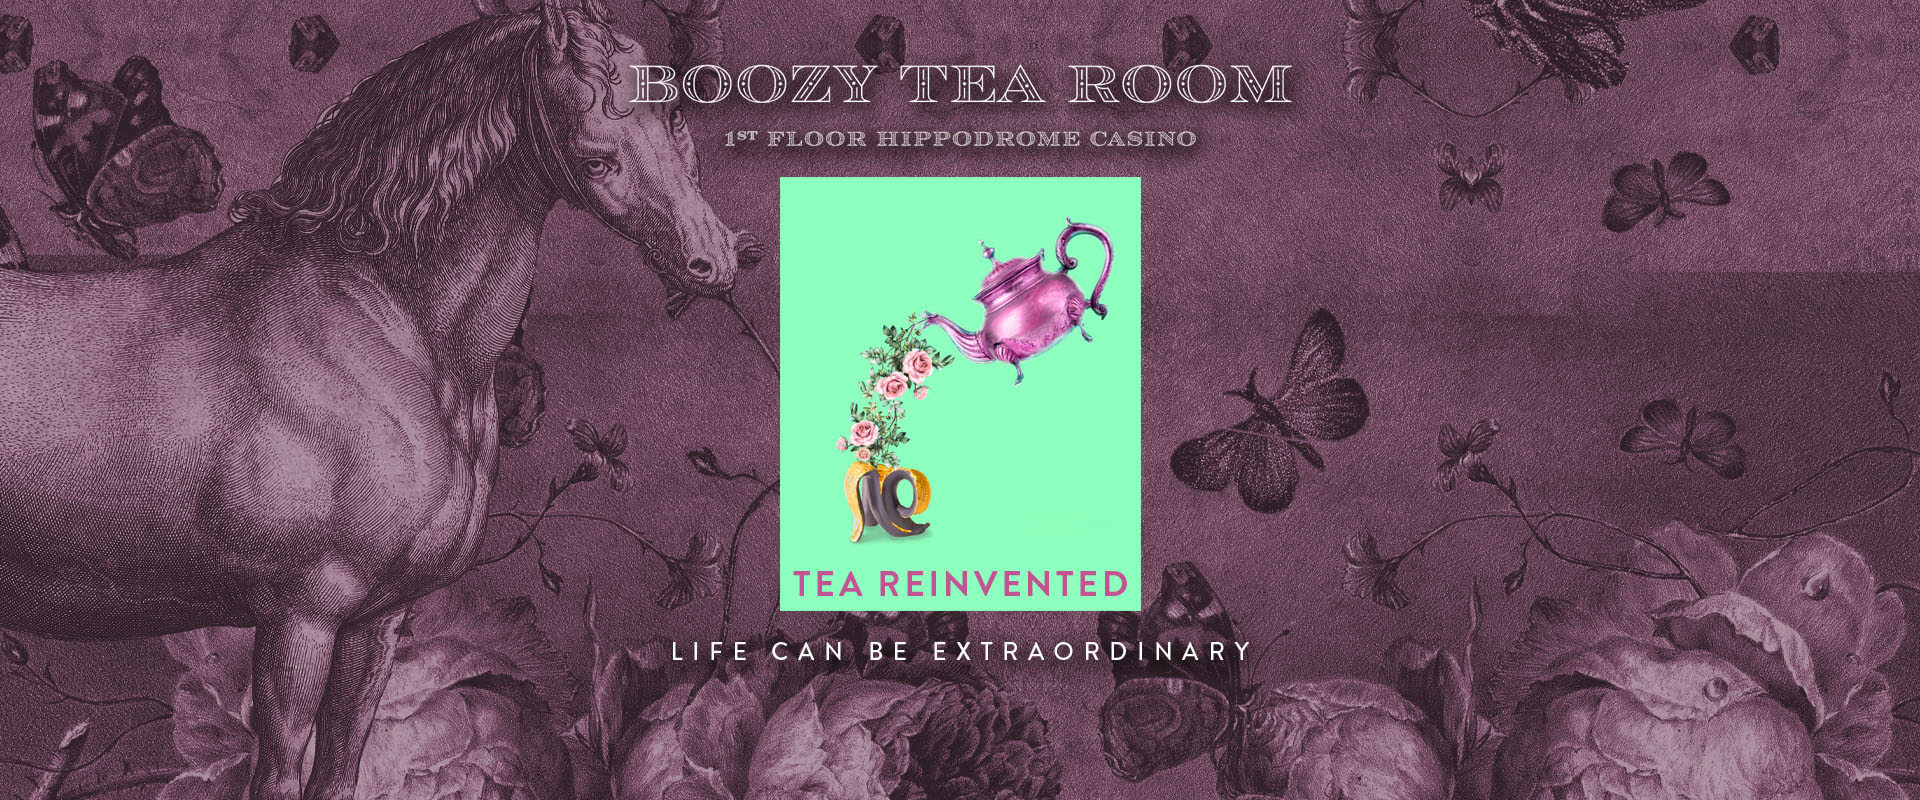 The Boozy Tea Room